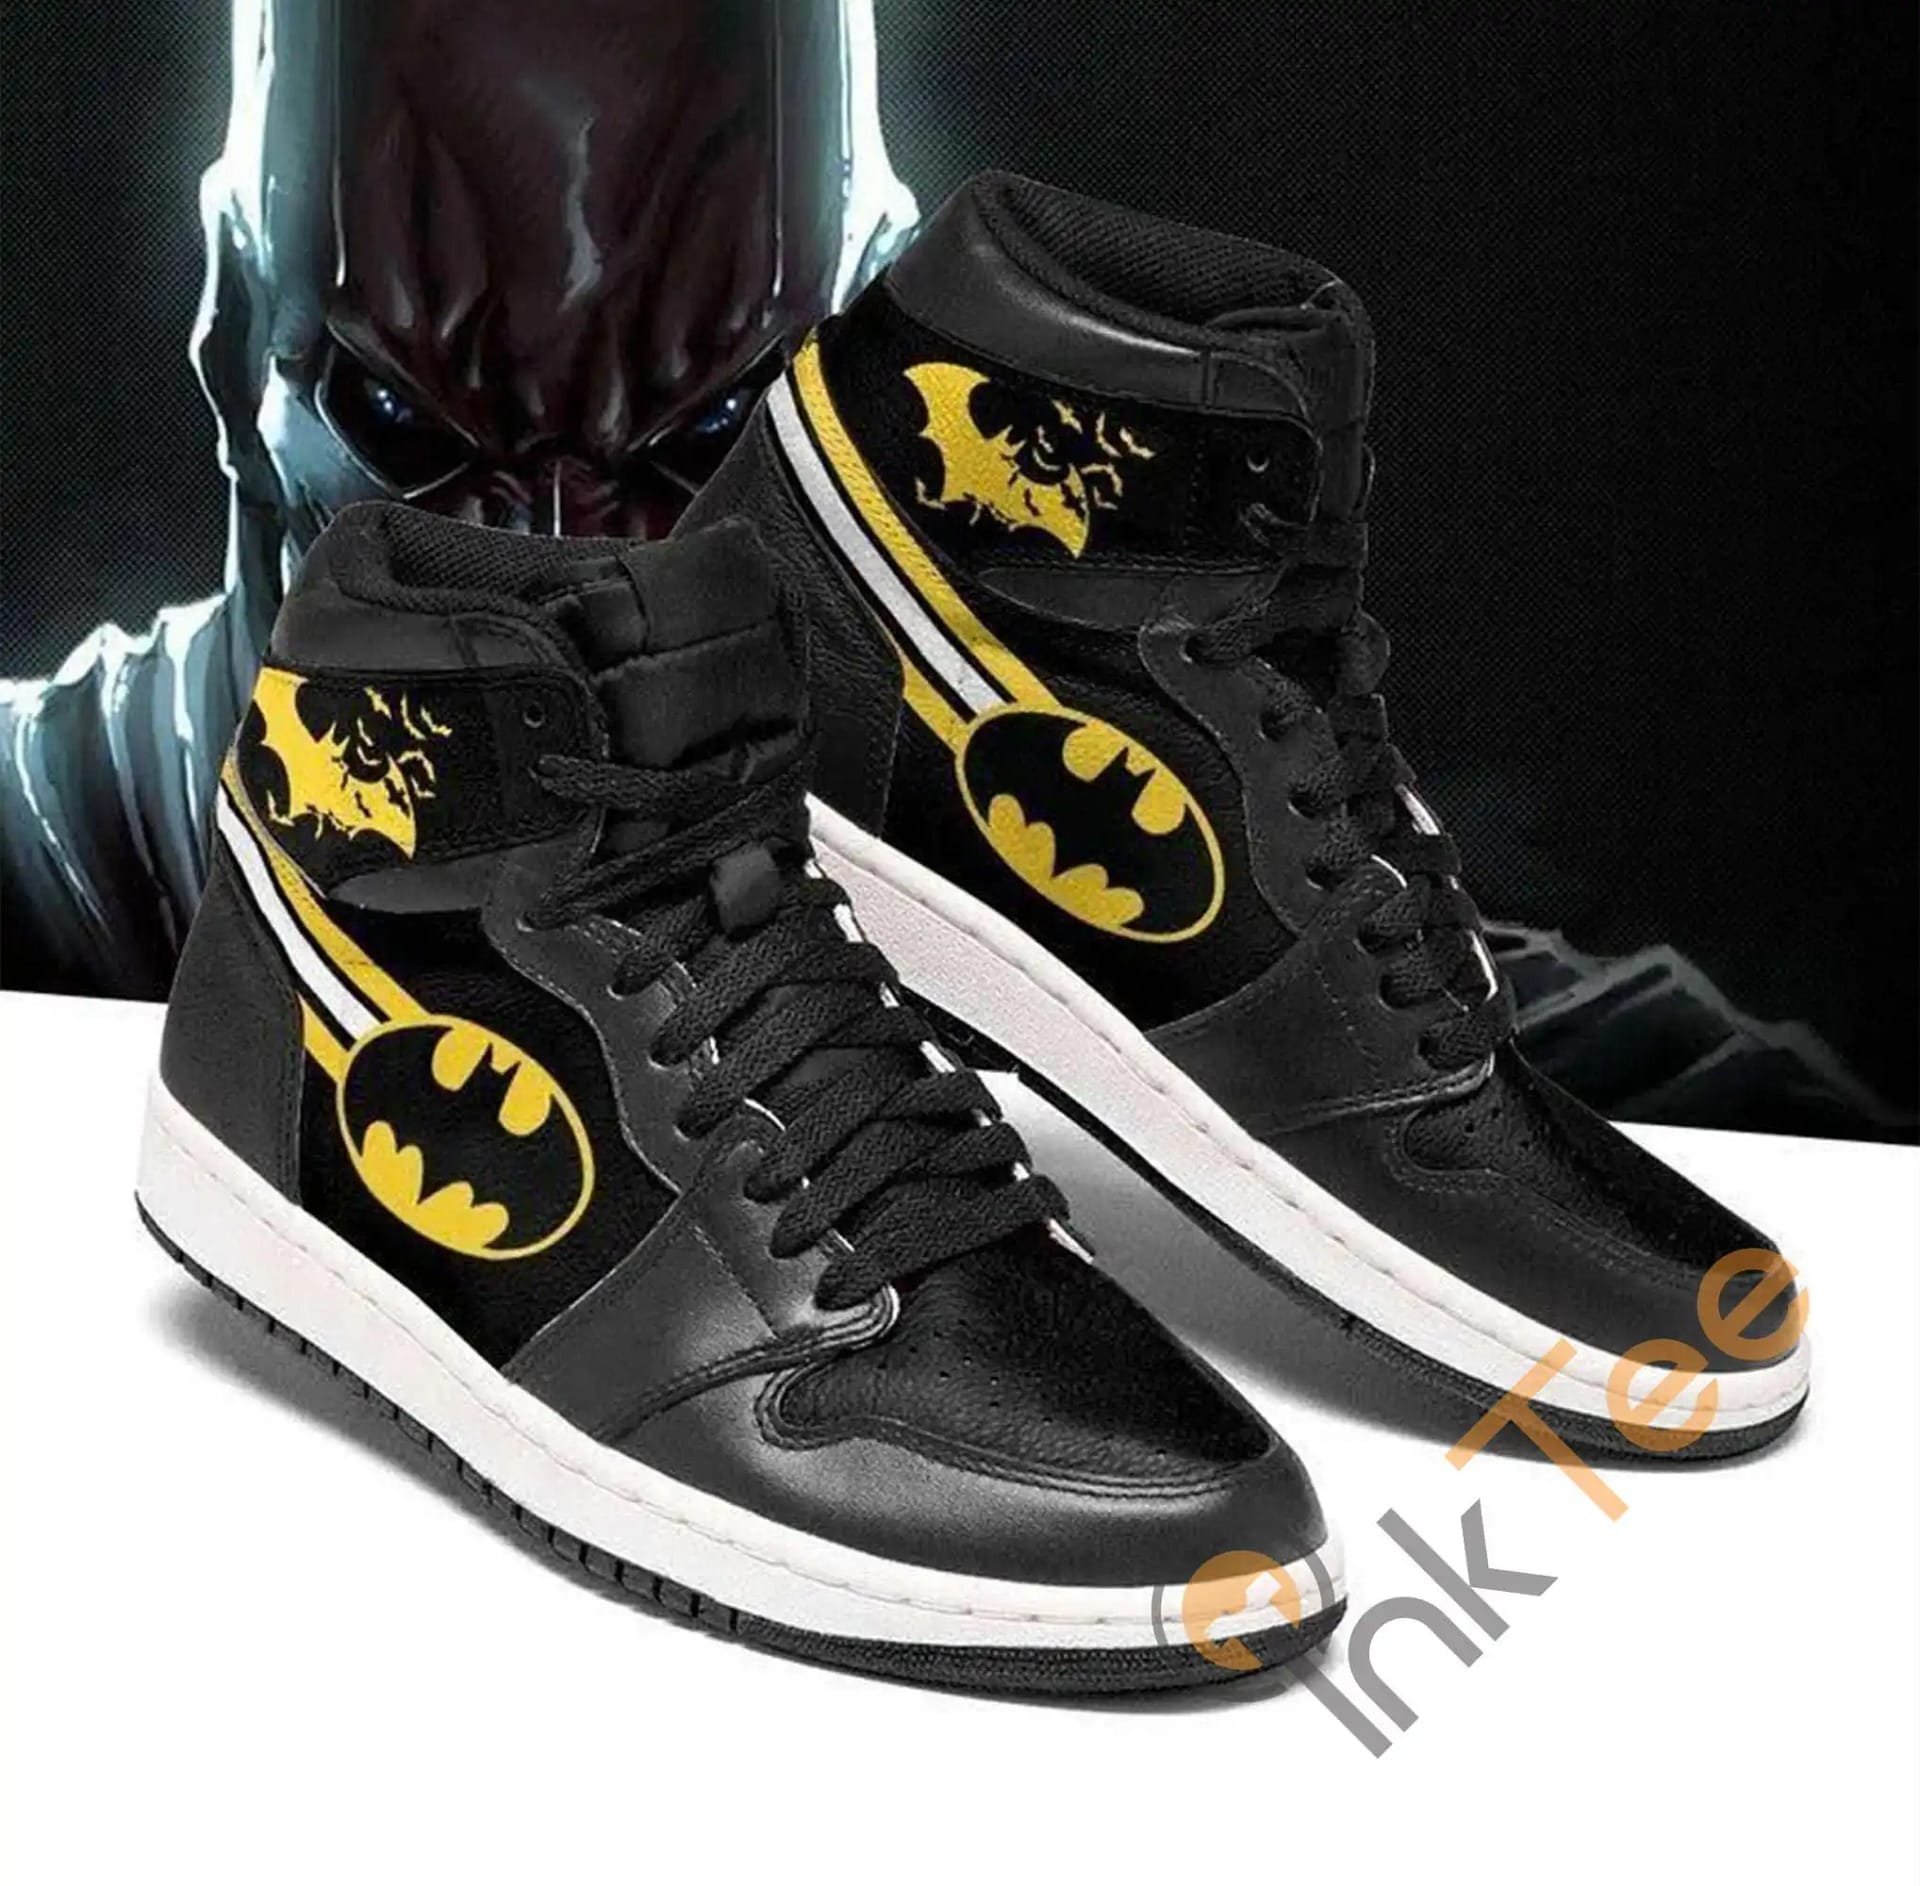 Custom Batman Type Justice League Anime For Fans Air Jordan Shoes